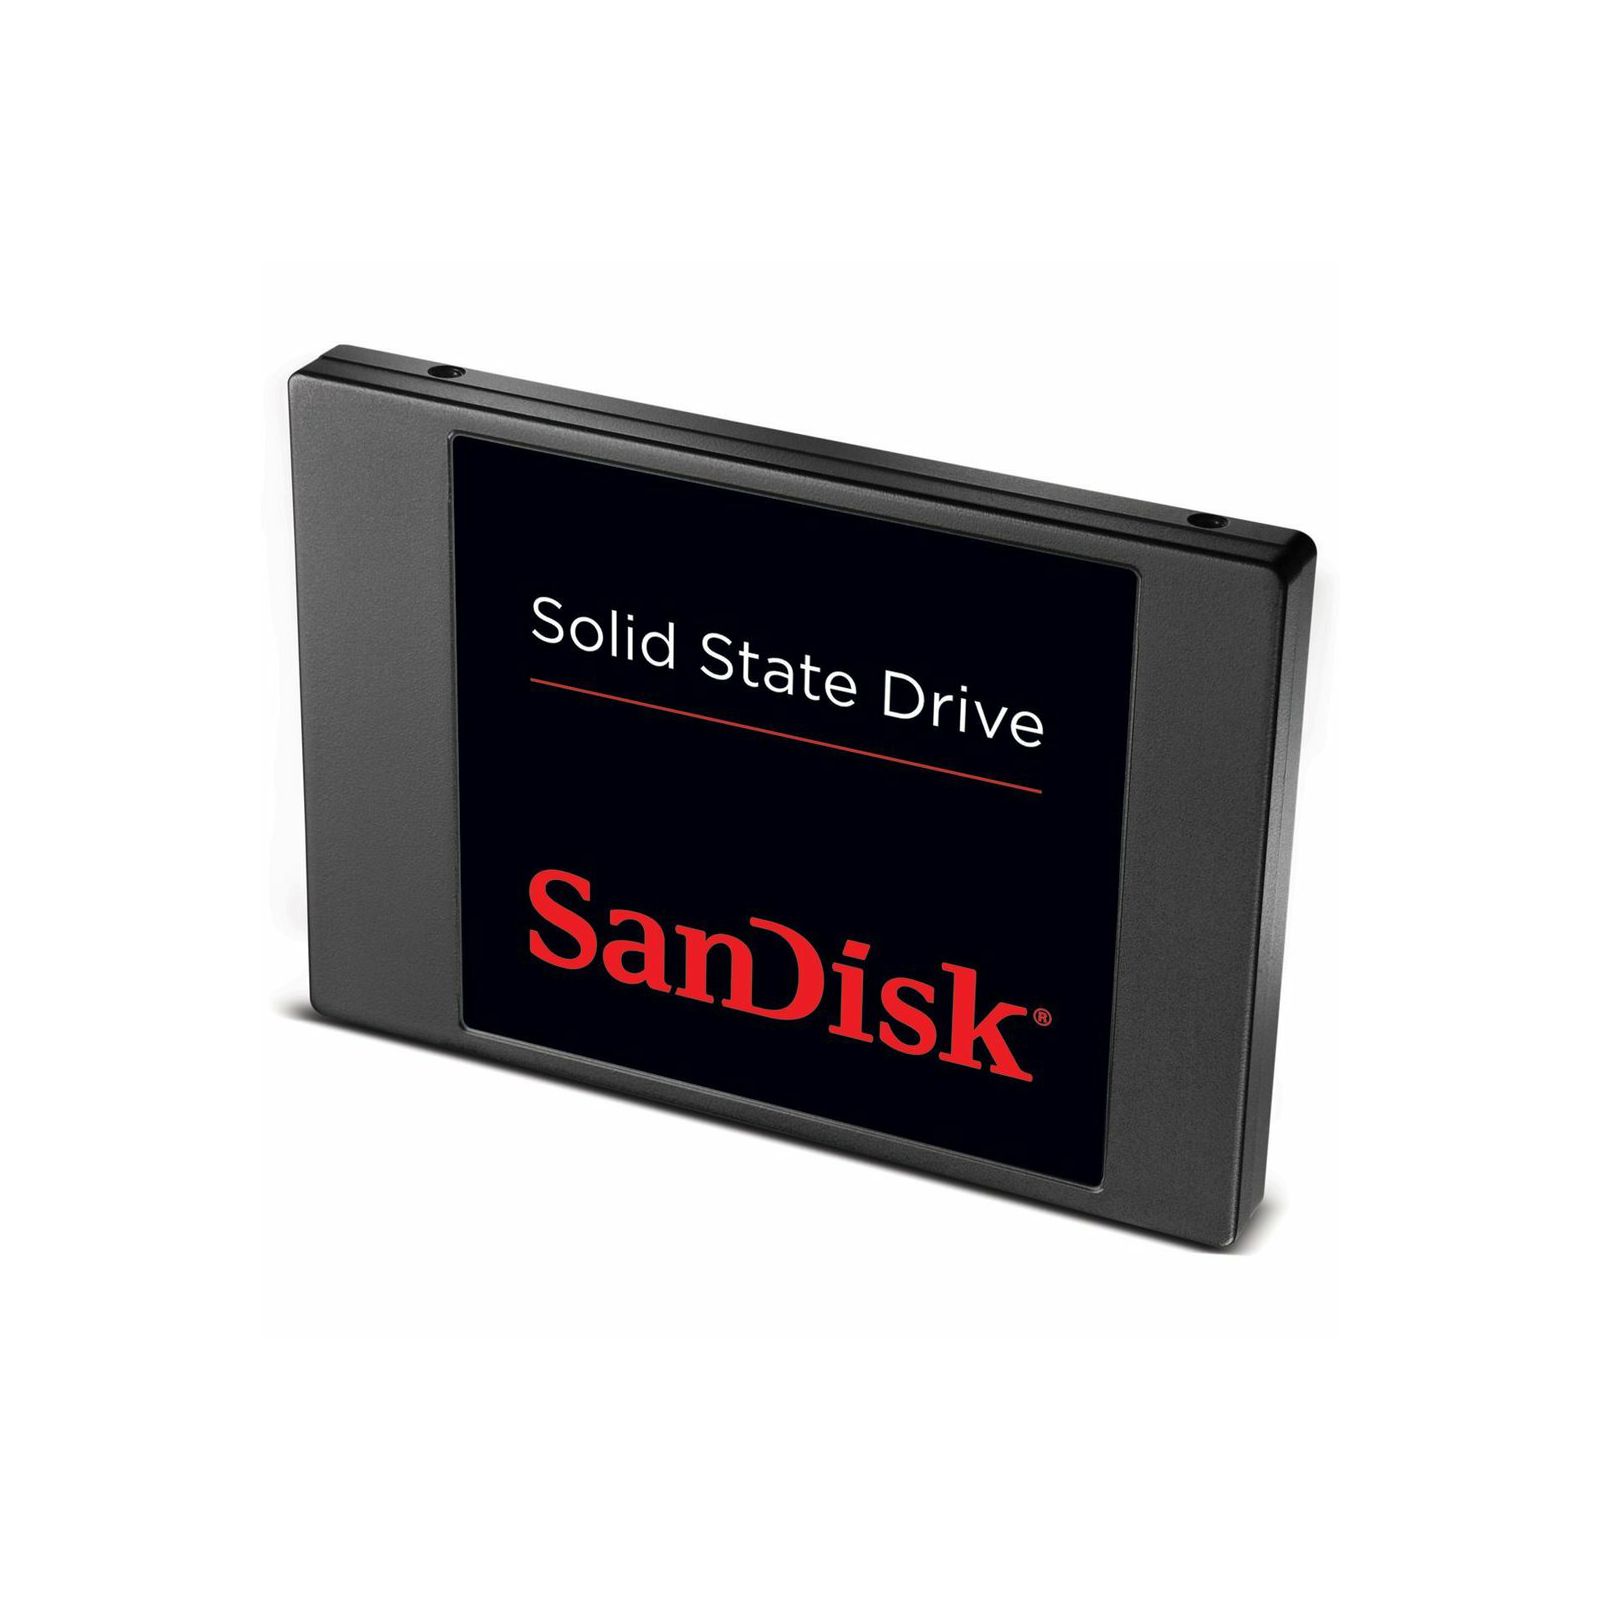 SanDisk SSD Pulse 256GB SDSSDP-256G-G25 Solid State Drive Disk